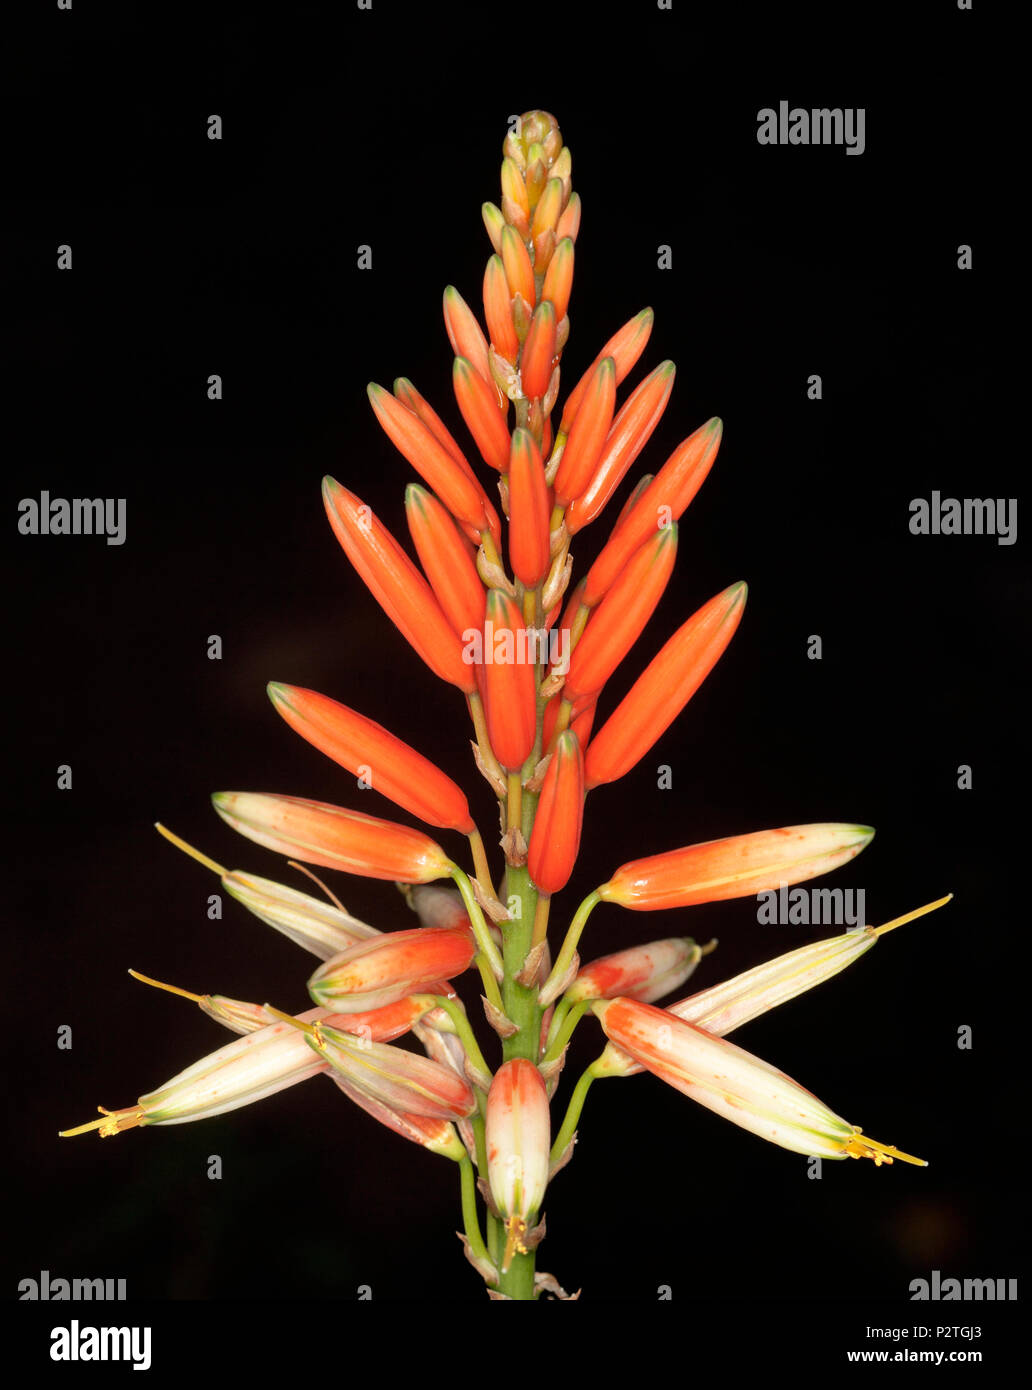 Atemberaubende Aussicht auf hohen Spike von lebendigen Rot/Orange und cremefarbenen Blüten von Dürreresistente sukkulente Pflanze Aloe "Venus" auf schwarzem Hintergrund Stockfoto